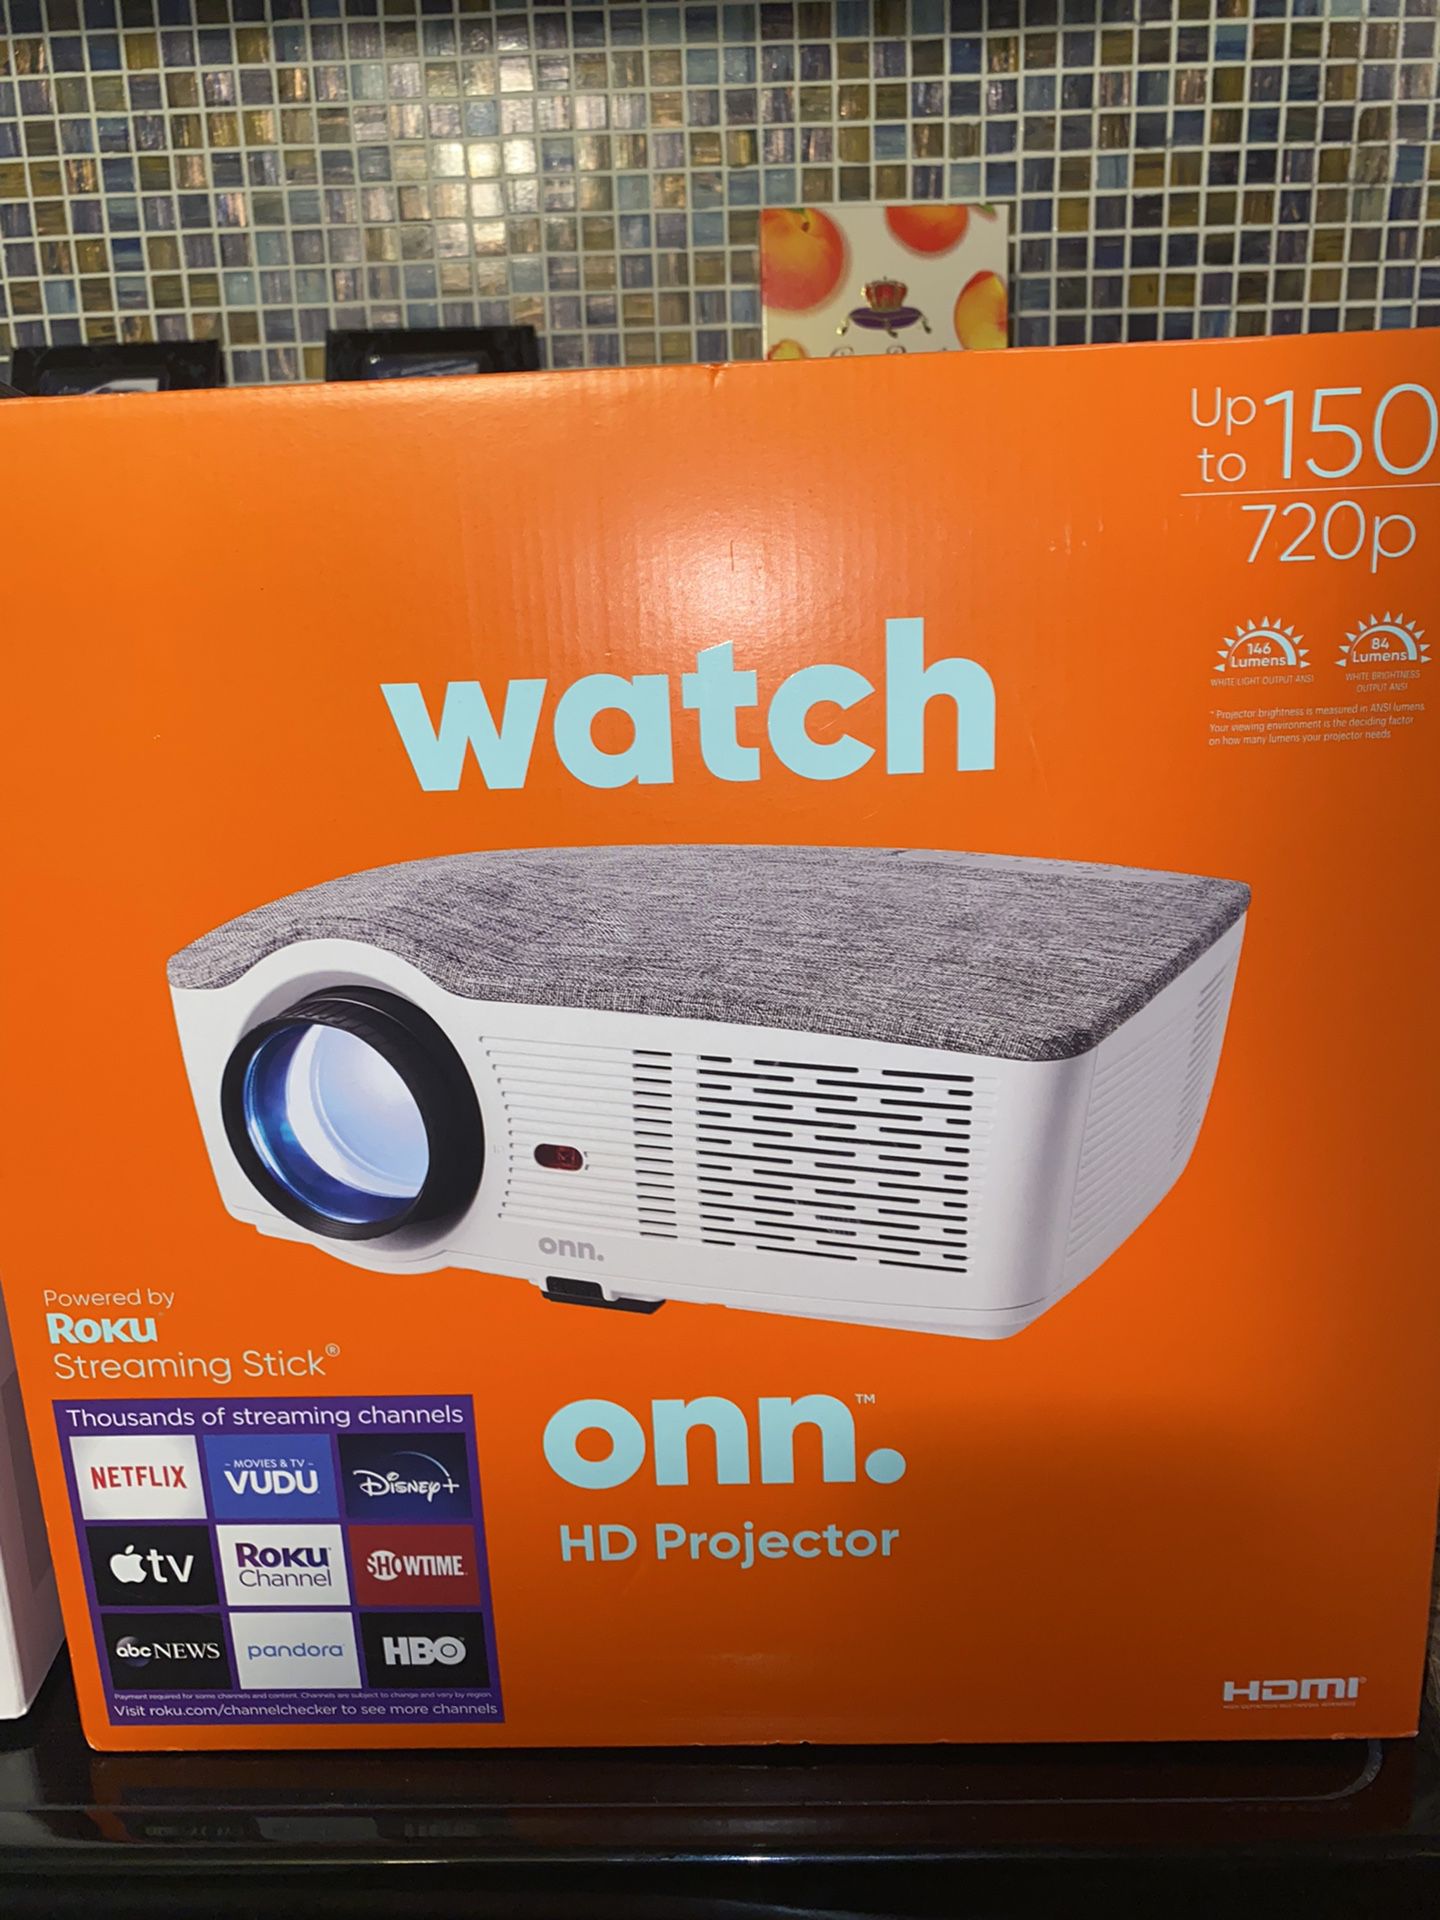 Brand New ONN Watch Roku 720 P Projector 